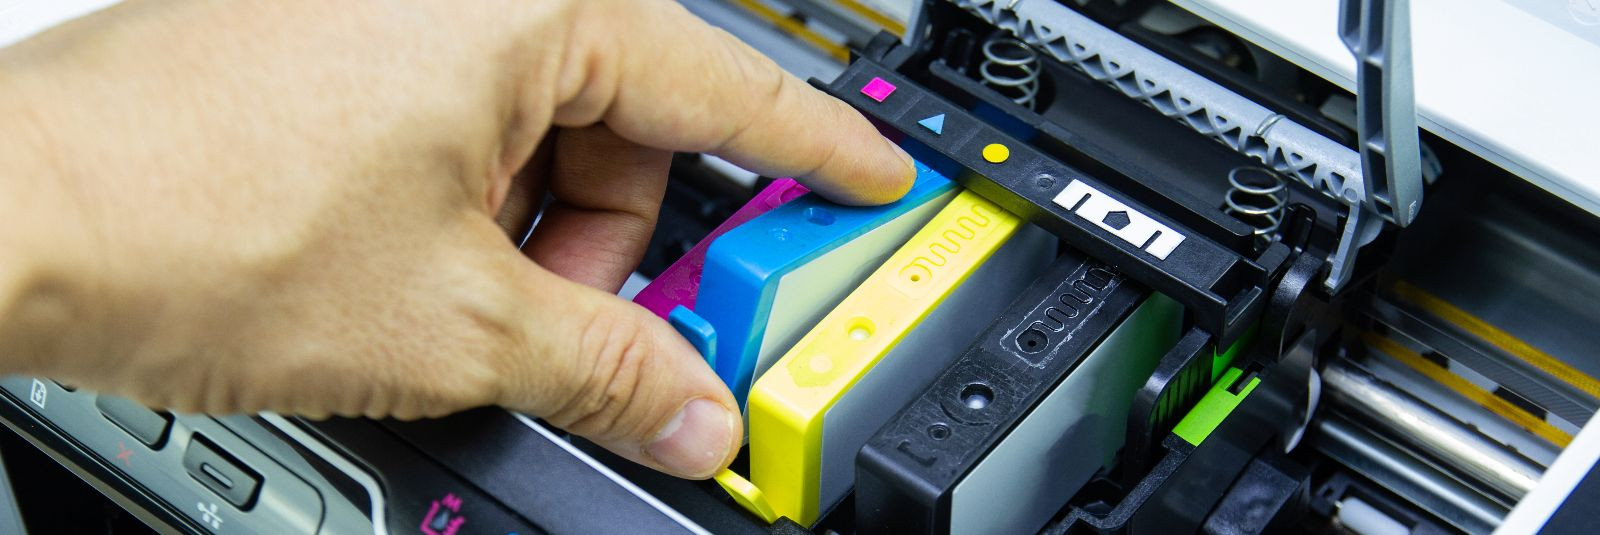 Kui otsite taskukohast ja keskkonnasõbralikku viisi oma printeri jätkusuutlikuks kasutamiseks, siis printerikassettide täitmine võib olla teie jaoks ideaalne va